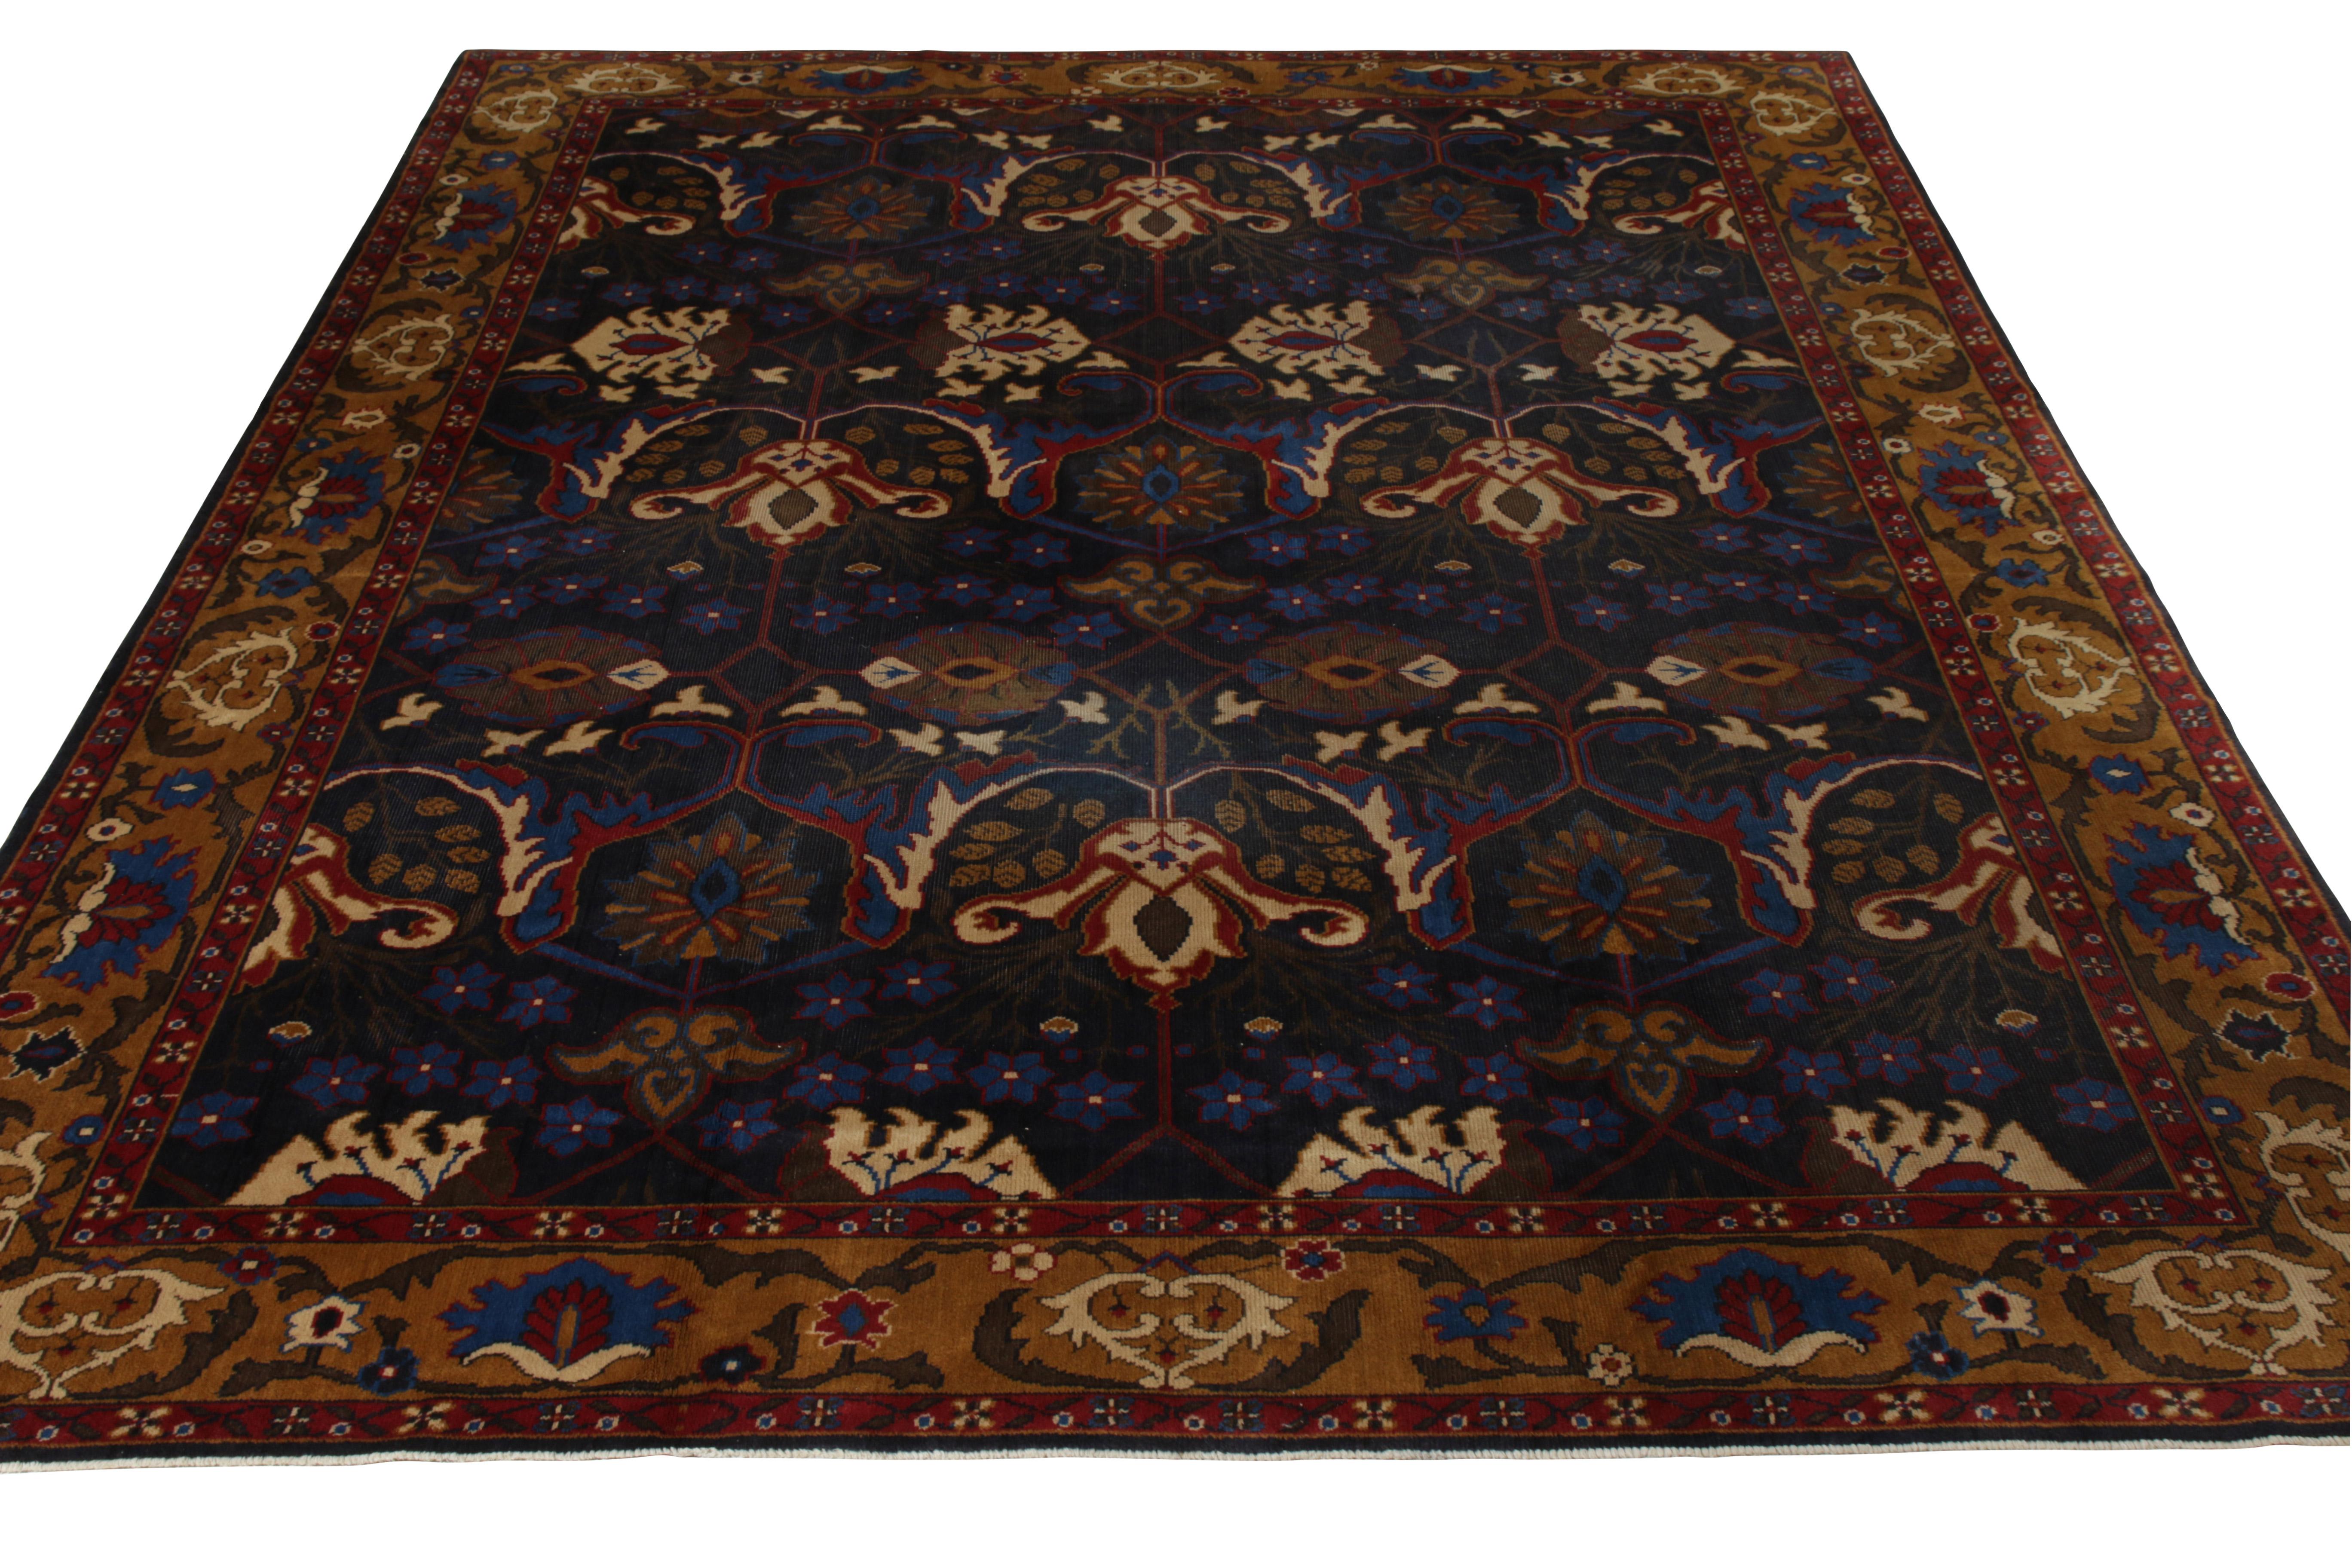 Un ancien tapis Agra de 10 x 13 en or et bleu royal, noué à la main en laine, originaire d'Inde vers 1910-1920. 

Sur le design : L'intéressante sensibilité stylistique des motifs floraux peut évoquer l'inspiration des célèbres tapis Bidjar de